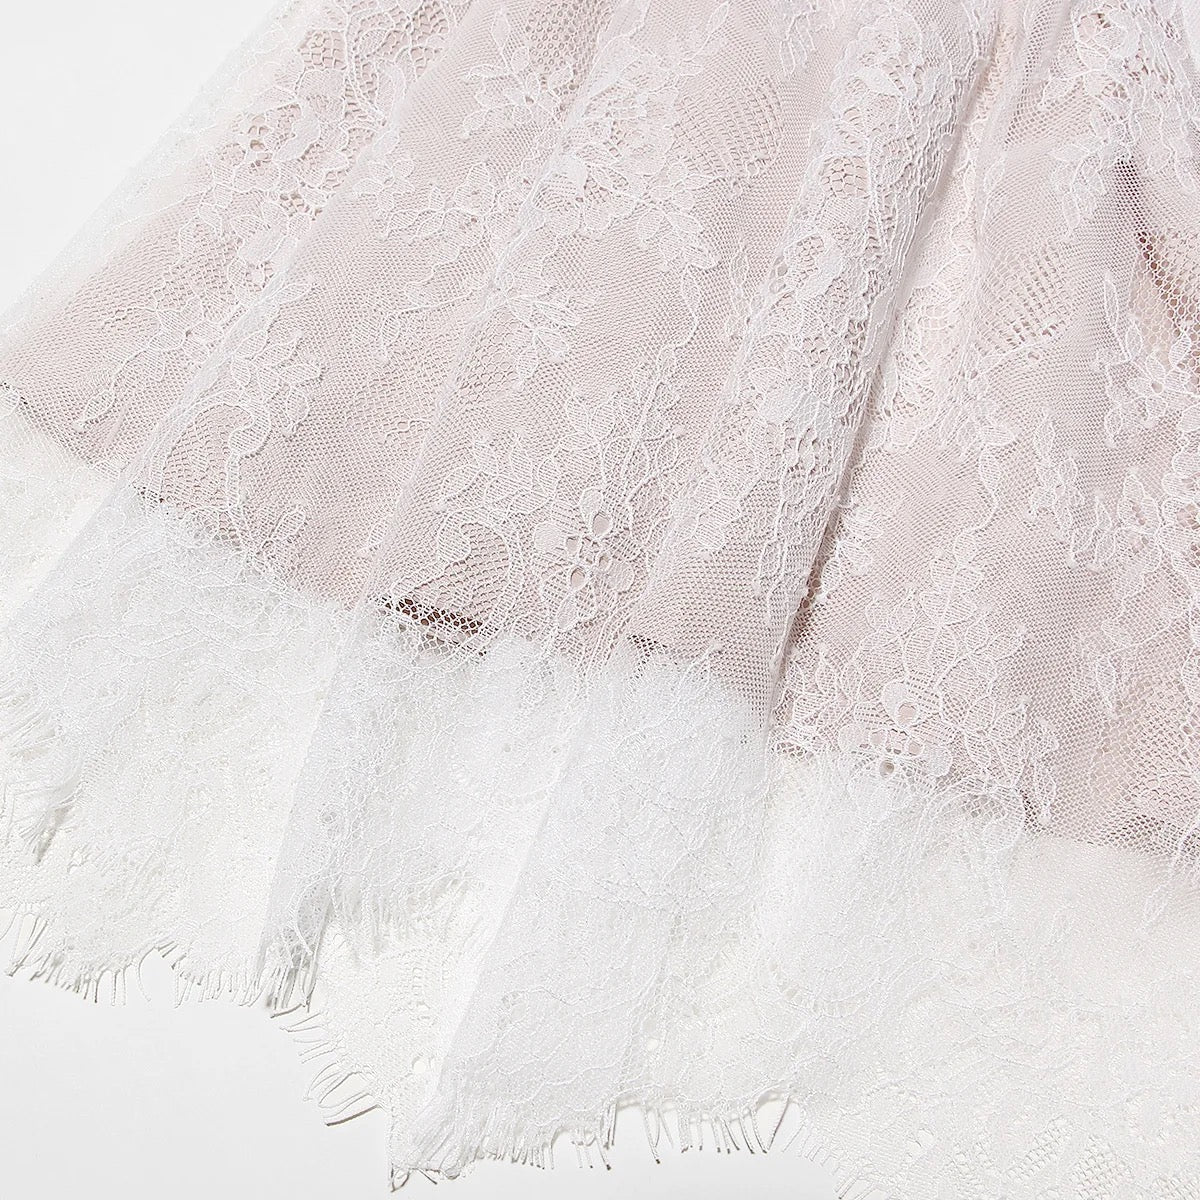 A&A Elegant Lace Long Sleeve Maxi Dress